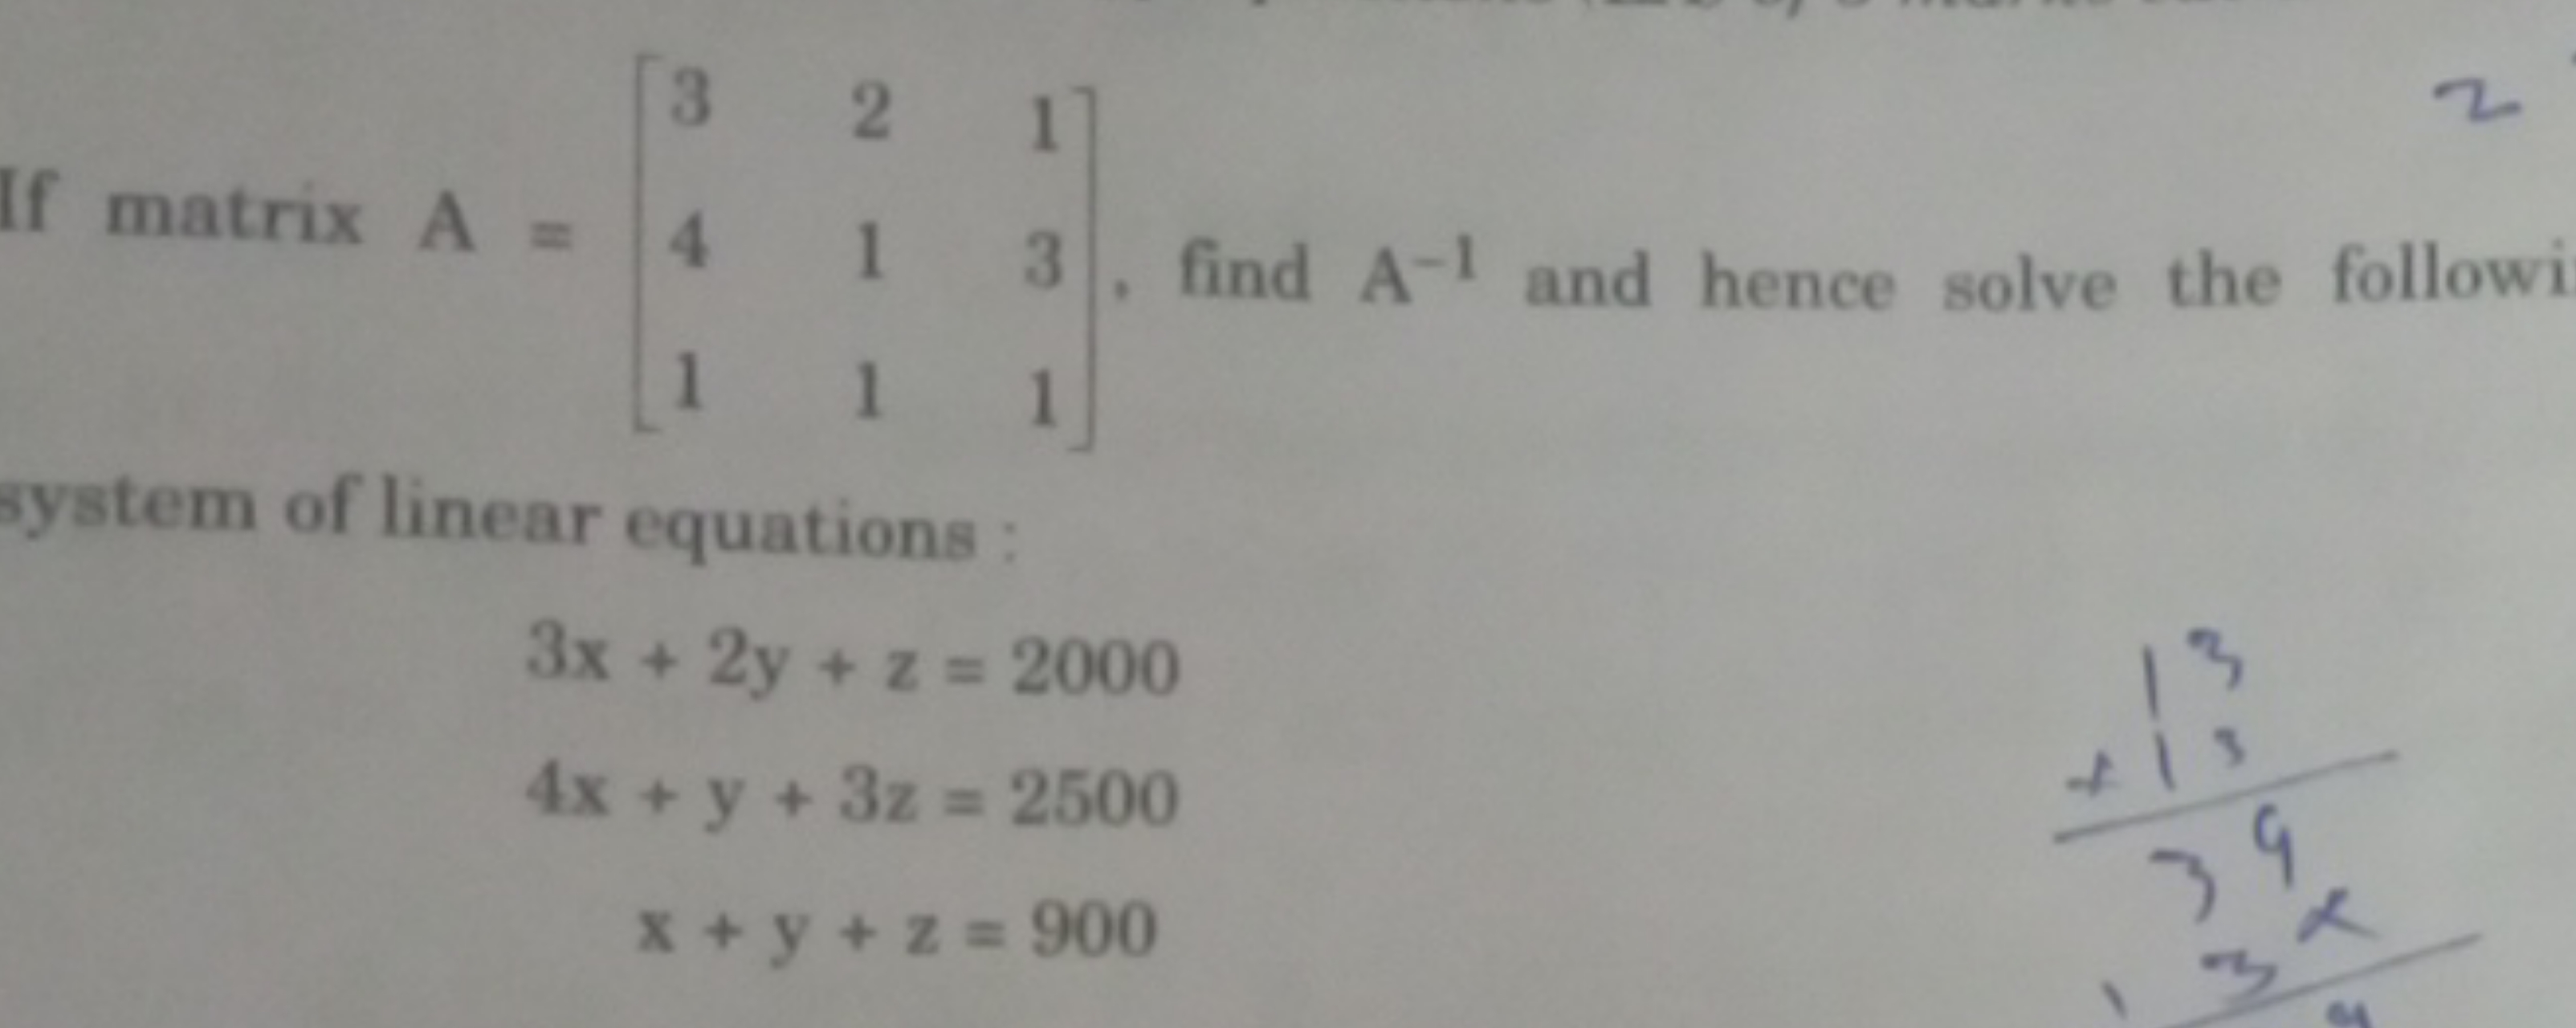 system of linear equations :
3x+2y+z=20004x+y+3z=2500x+y+z=900​